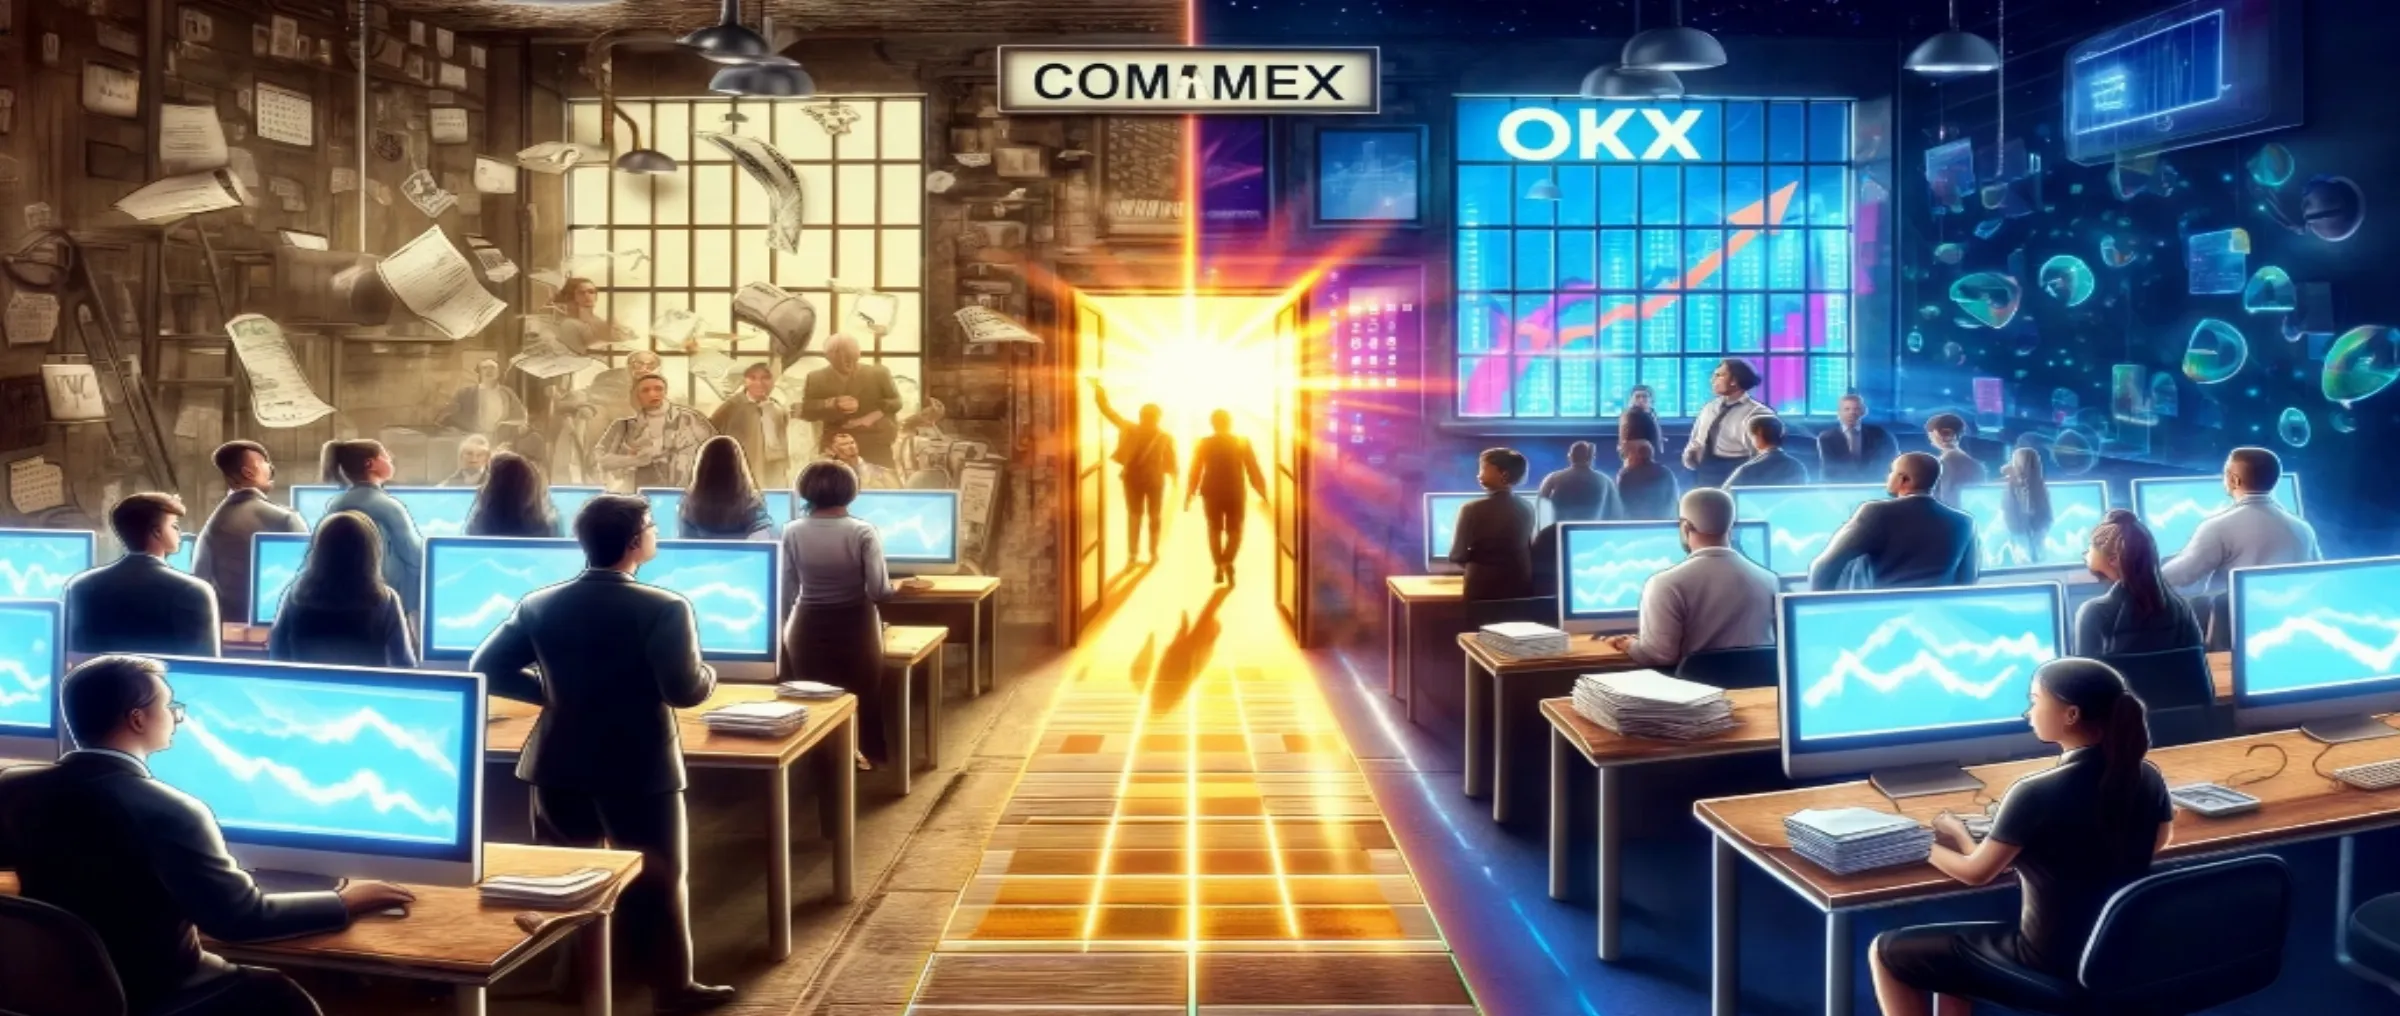 Пользователи переходят на OKX после прекращения работы CommEX